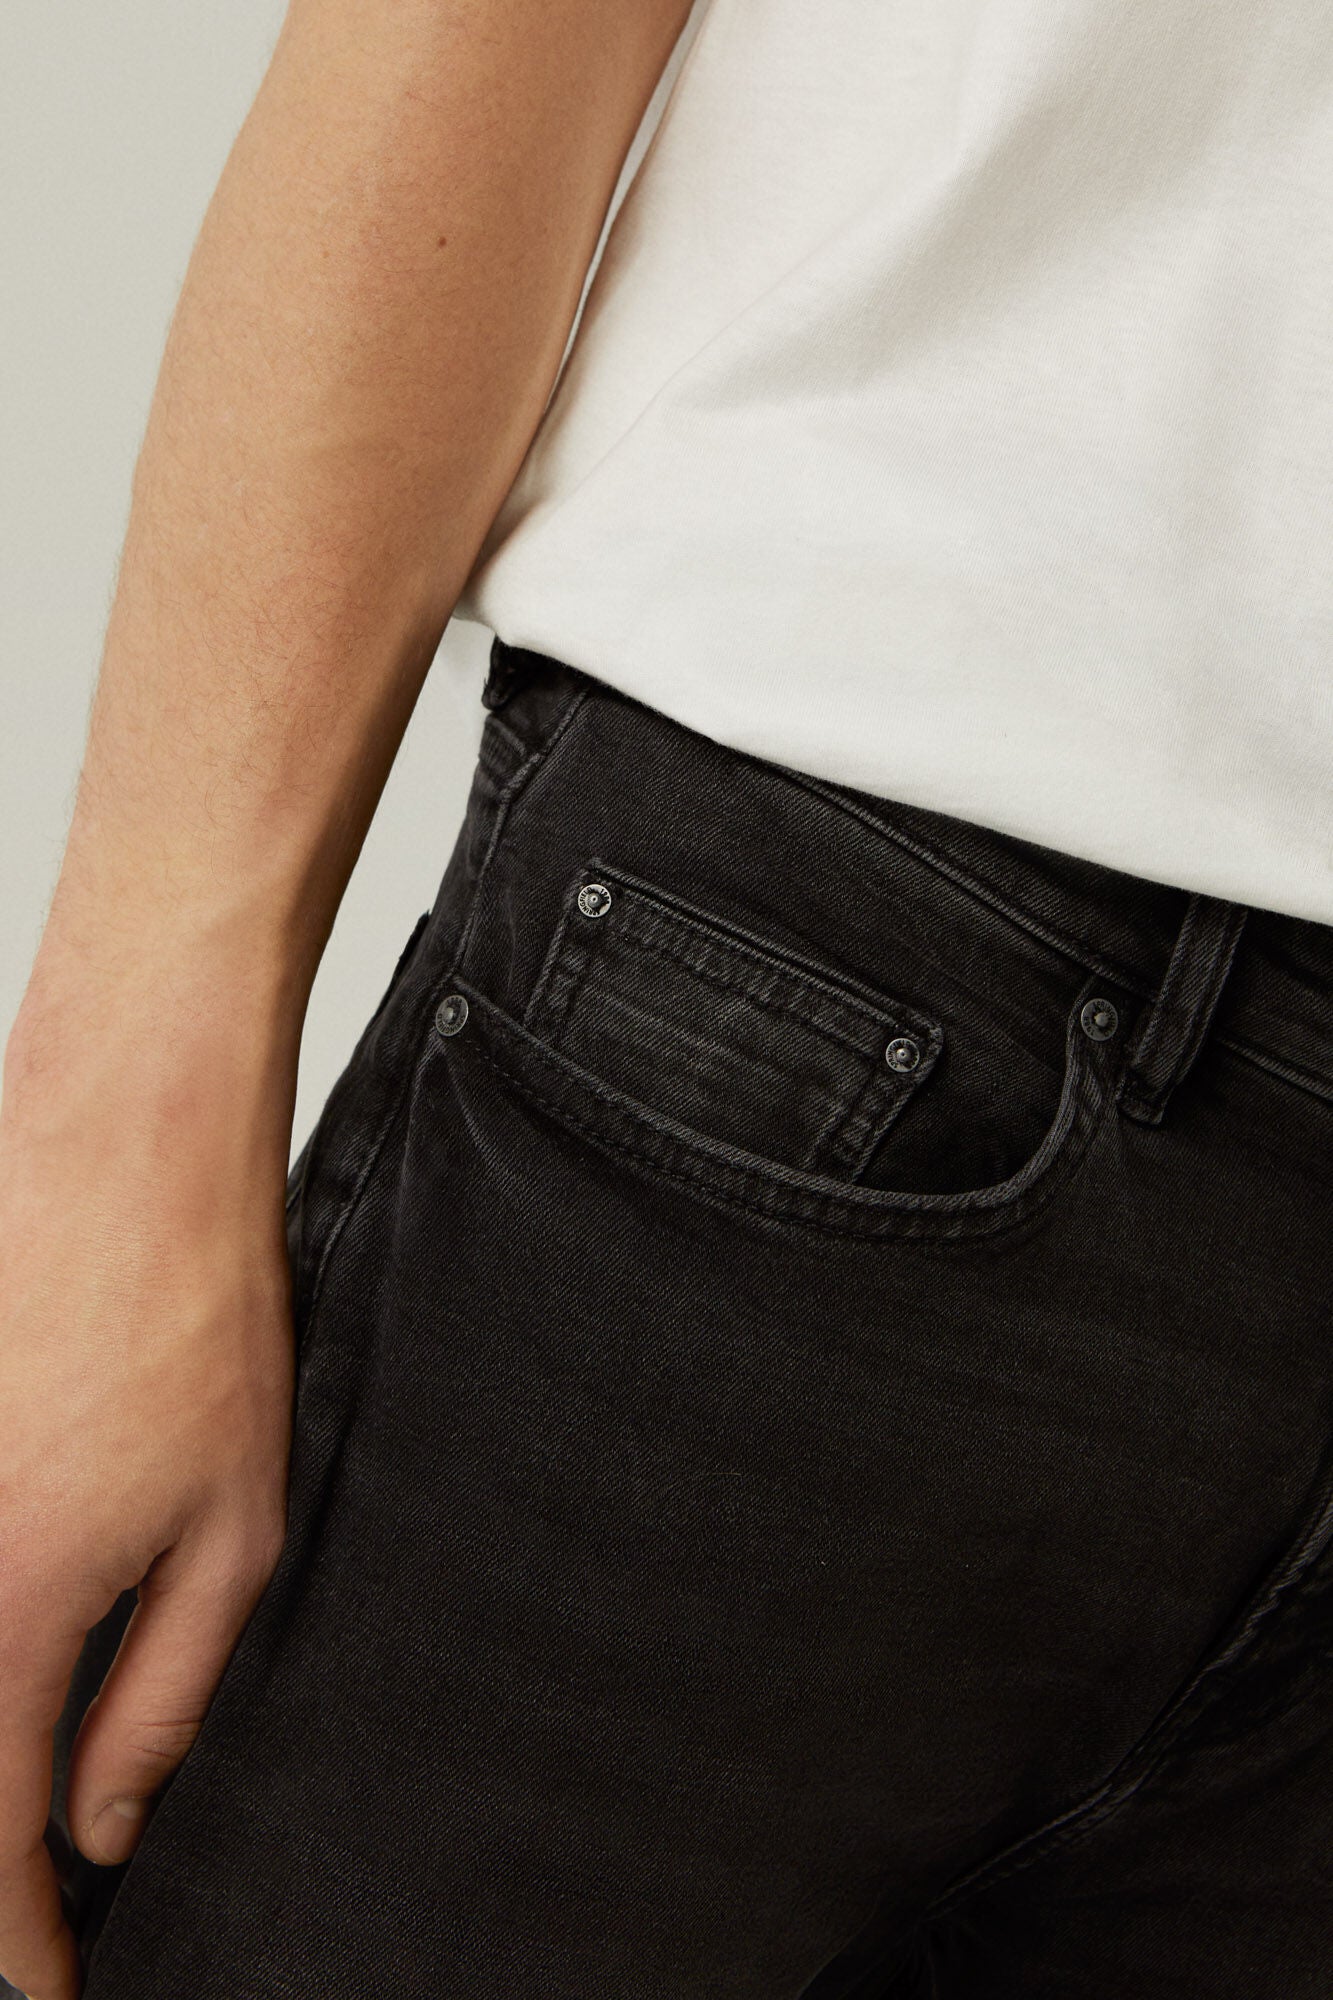 Black wash slim cropped comfort jeans